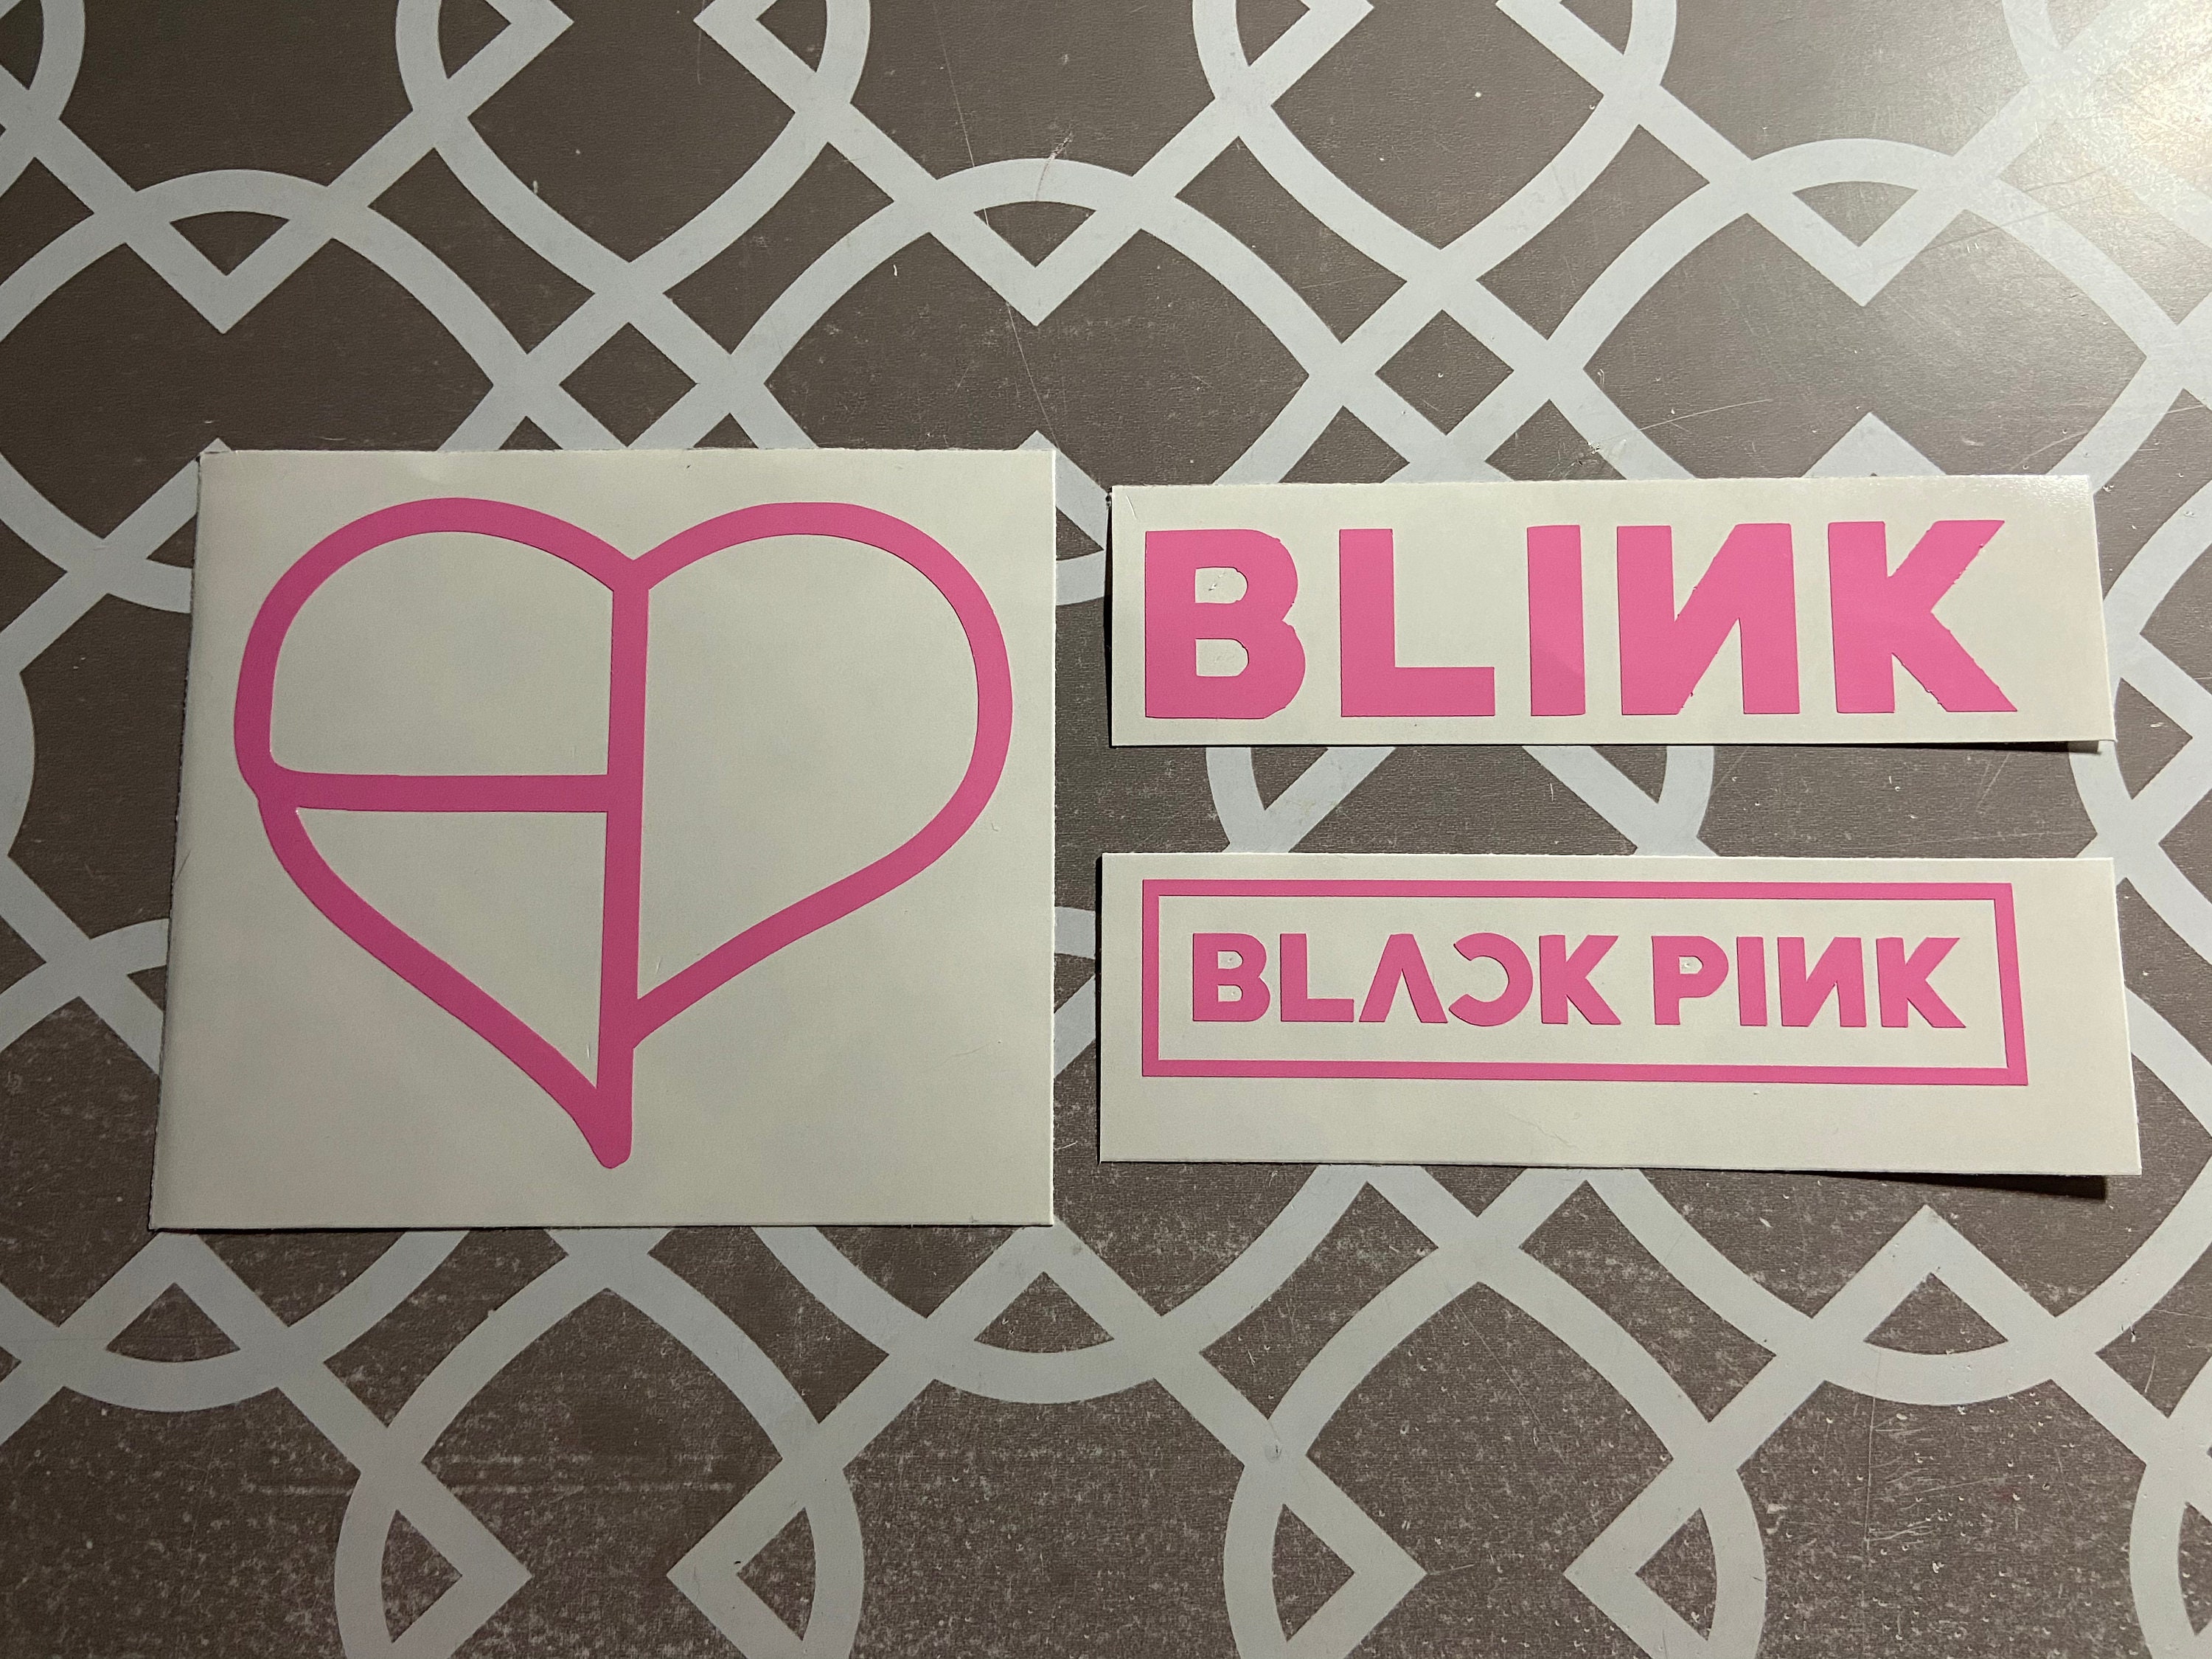 Download Blink Blink 💗 Blackpink Blinksforever Blinks - Heart PNG Image  with No Background - PNGkey.com